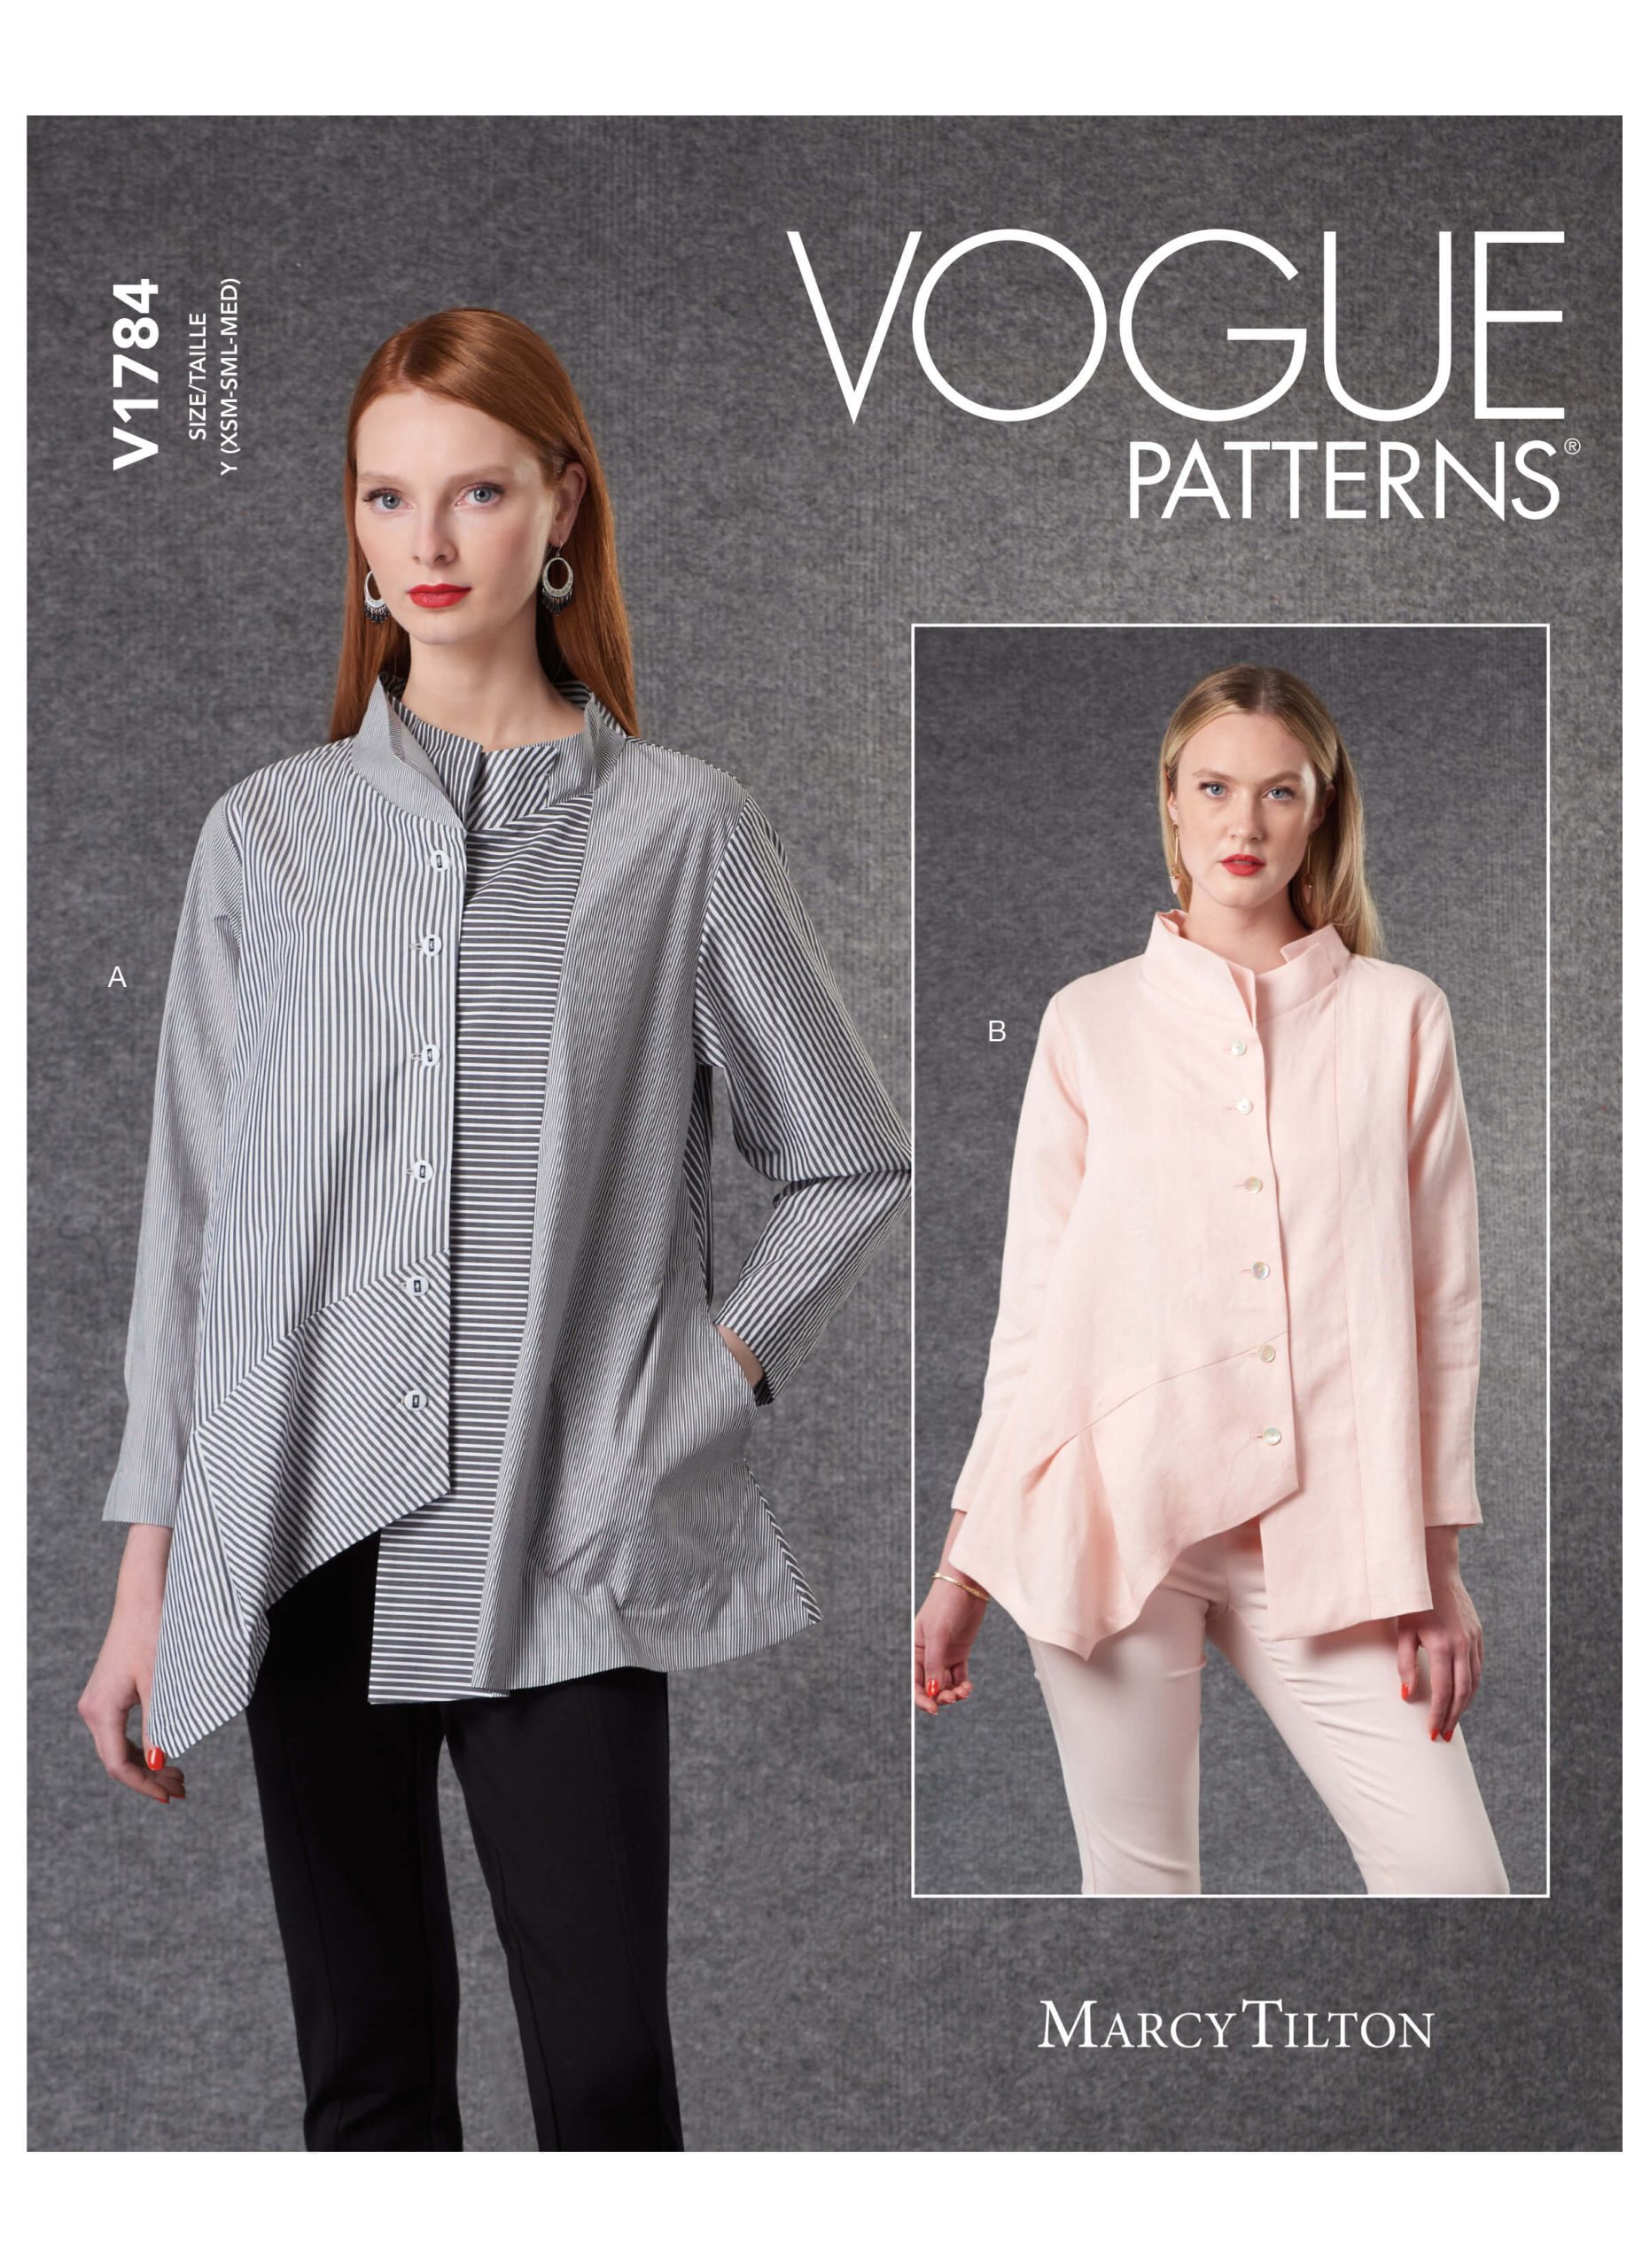 Vogue Patterns V1784 Misses' Shirts Marcy Tilton